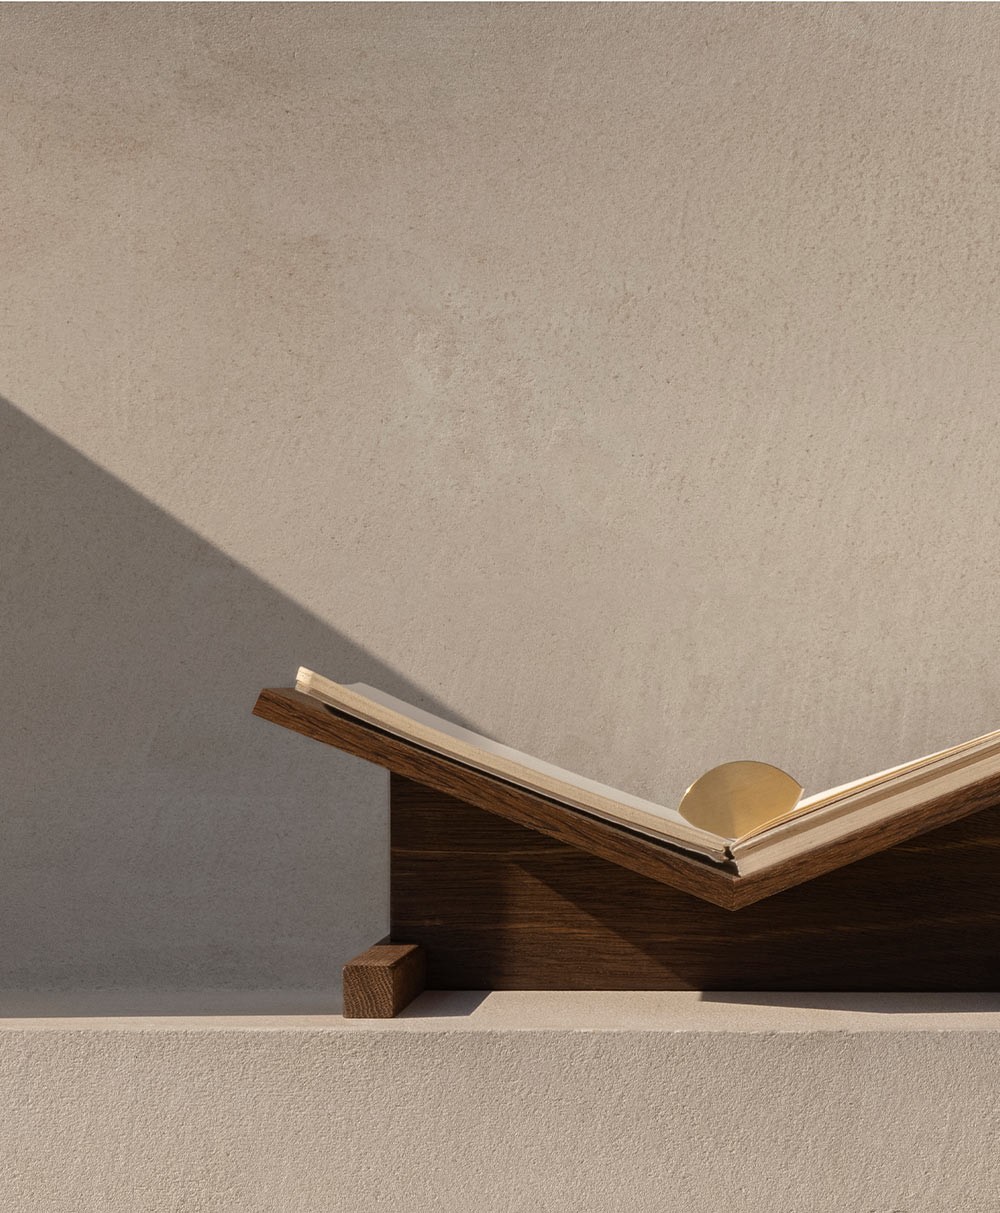 Moodbild des Buchgewichts „Almond“ aus Messing und des Buchständers „Page“ aus Eiche von der Marke CACHÉ im RAUM concept store 